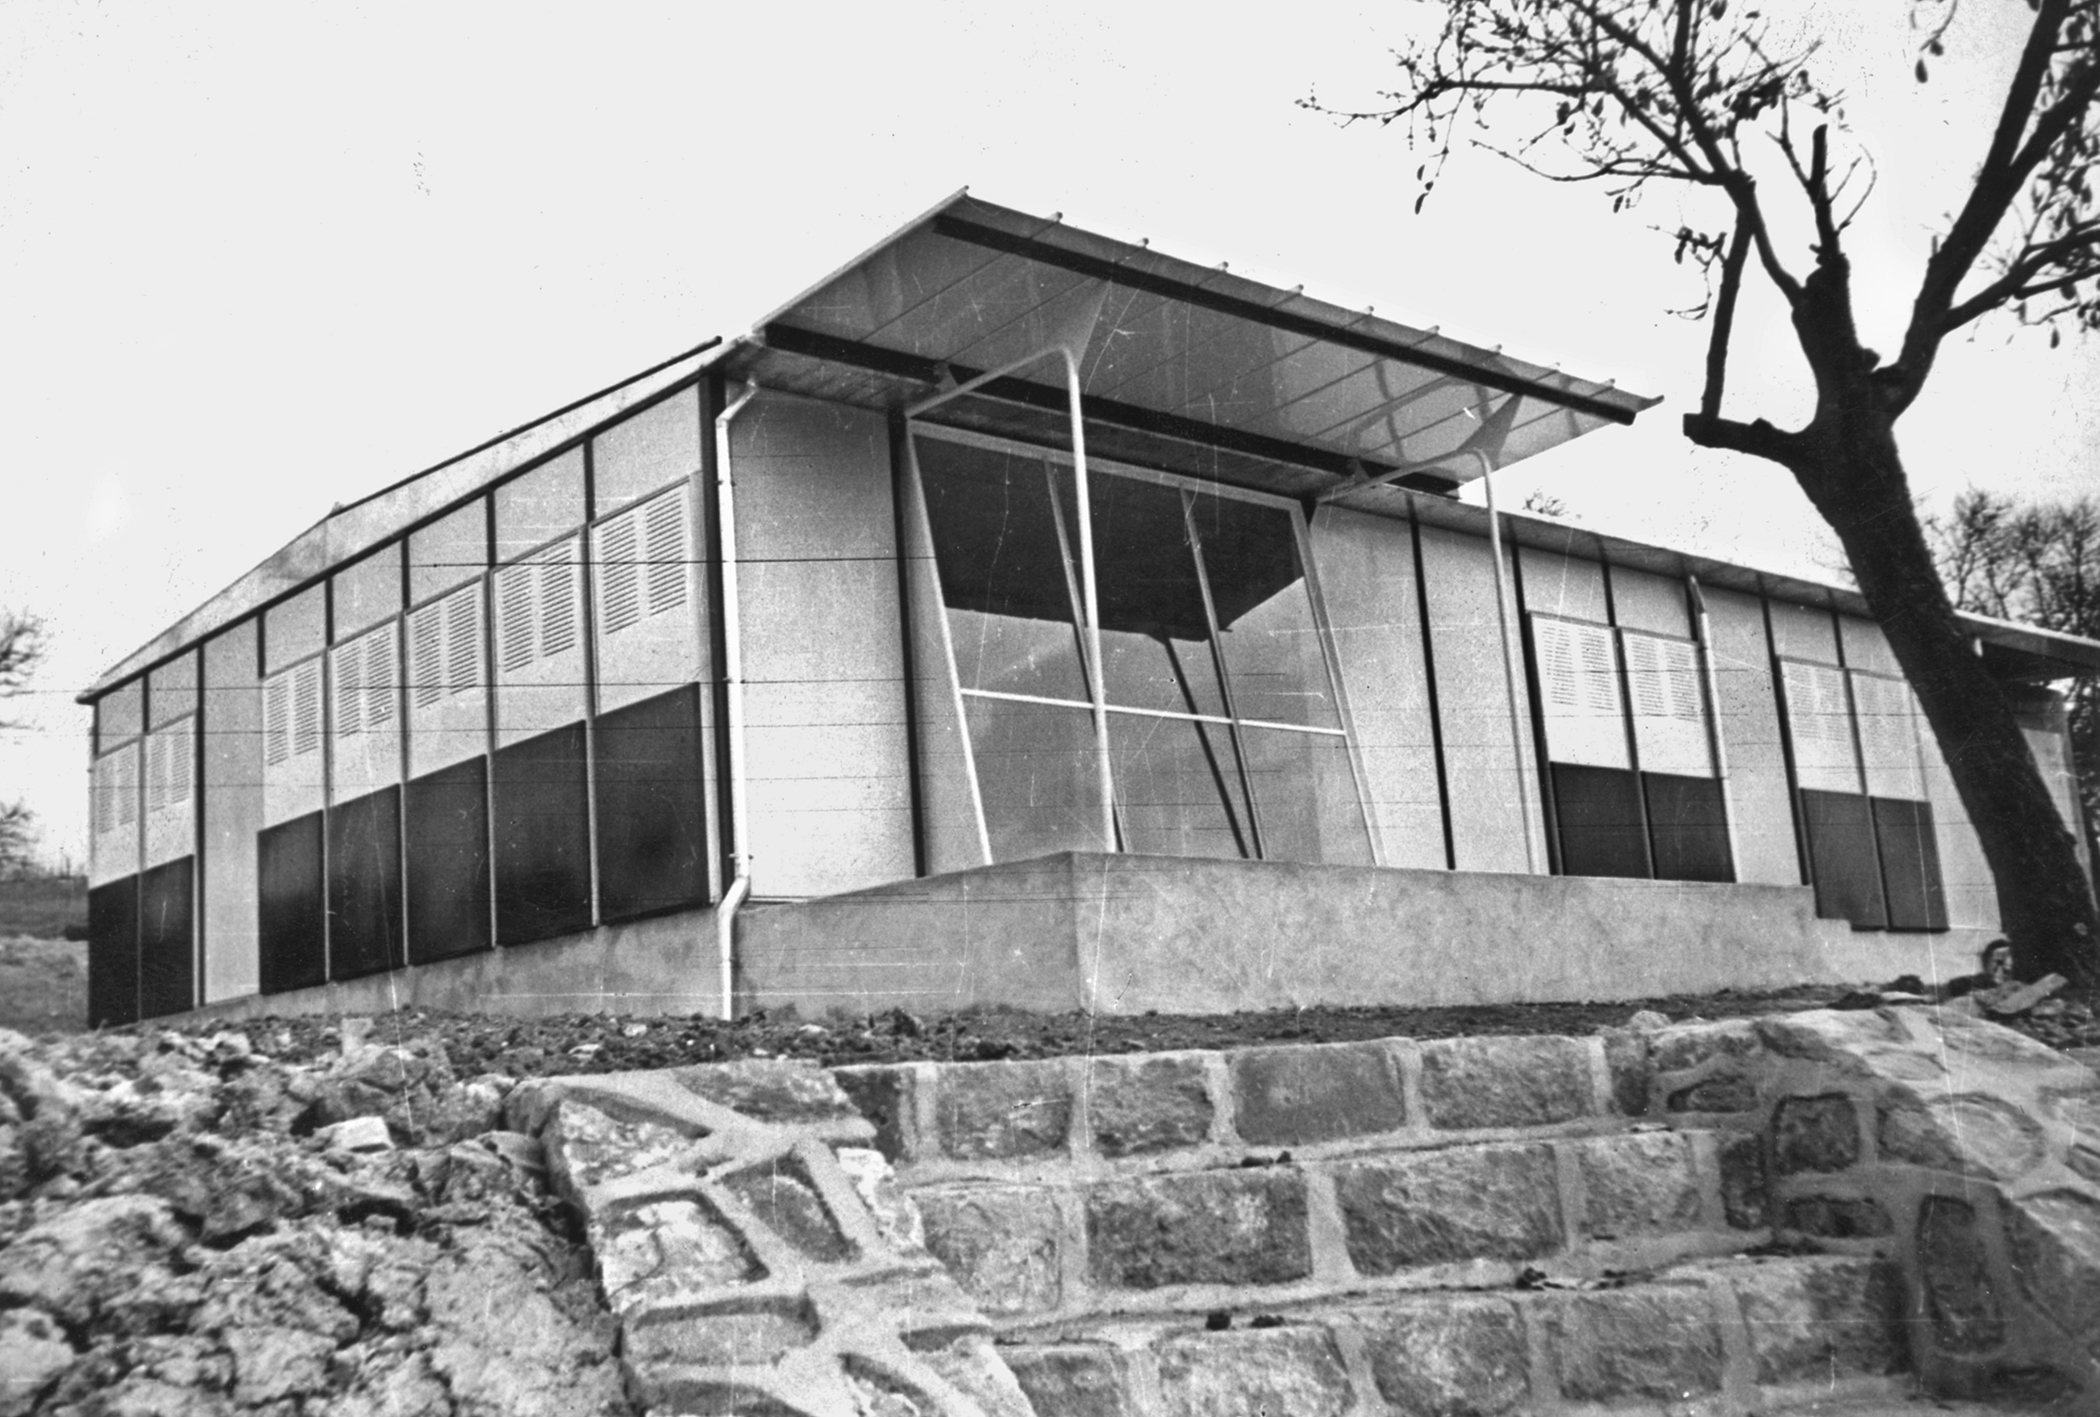 Métropole demountable house. 8x12 teacher’s house at the school in Vantoux, 1950.